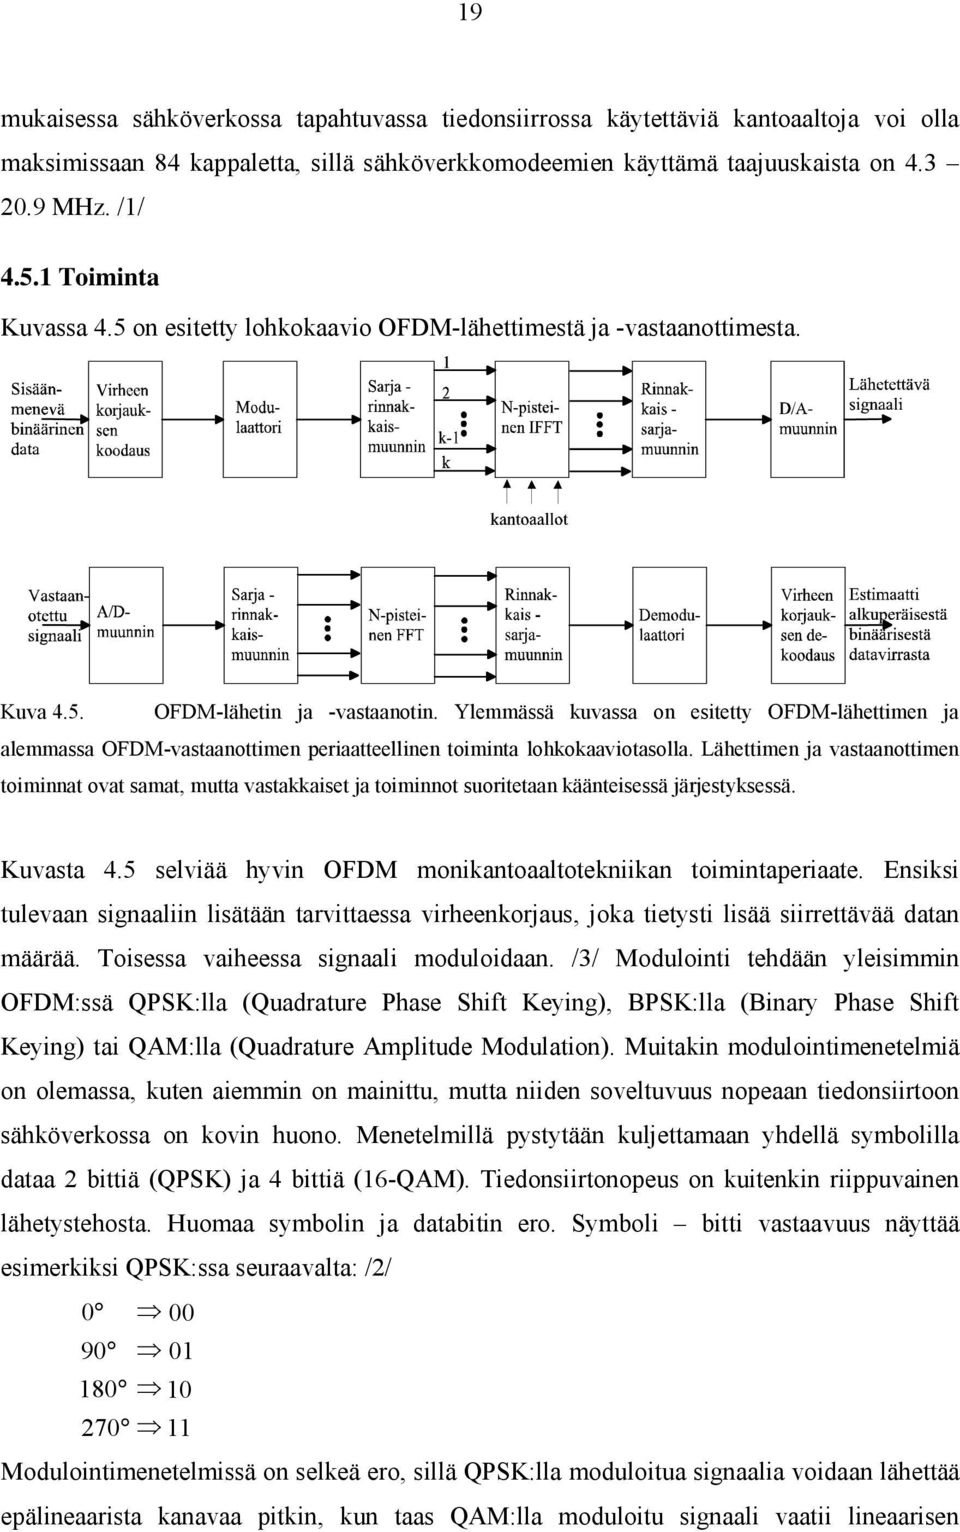 Ylemmässä kuvassa on esitetty OFDM-lähettimen ja alemmassa OFDM-vastaanottimen periaatteellinen toiminta lohkokaaviotasolla.